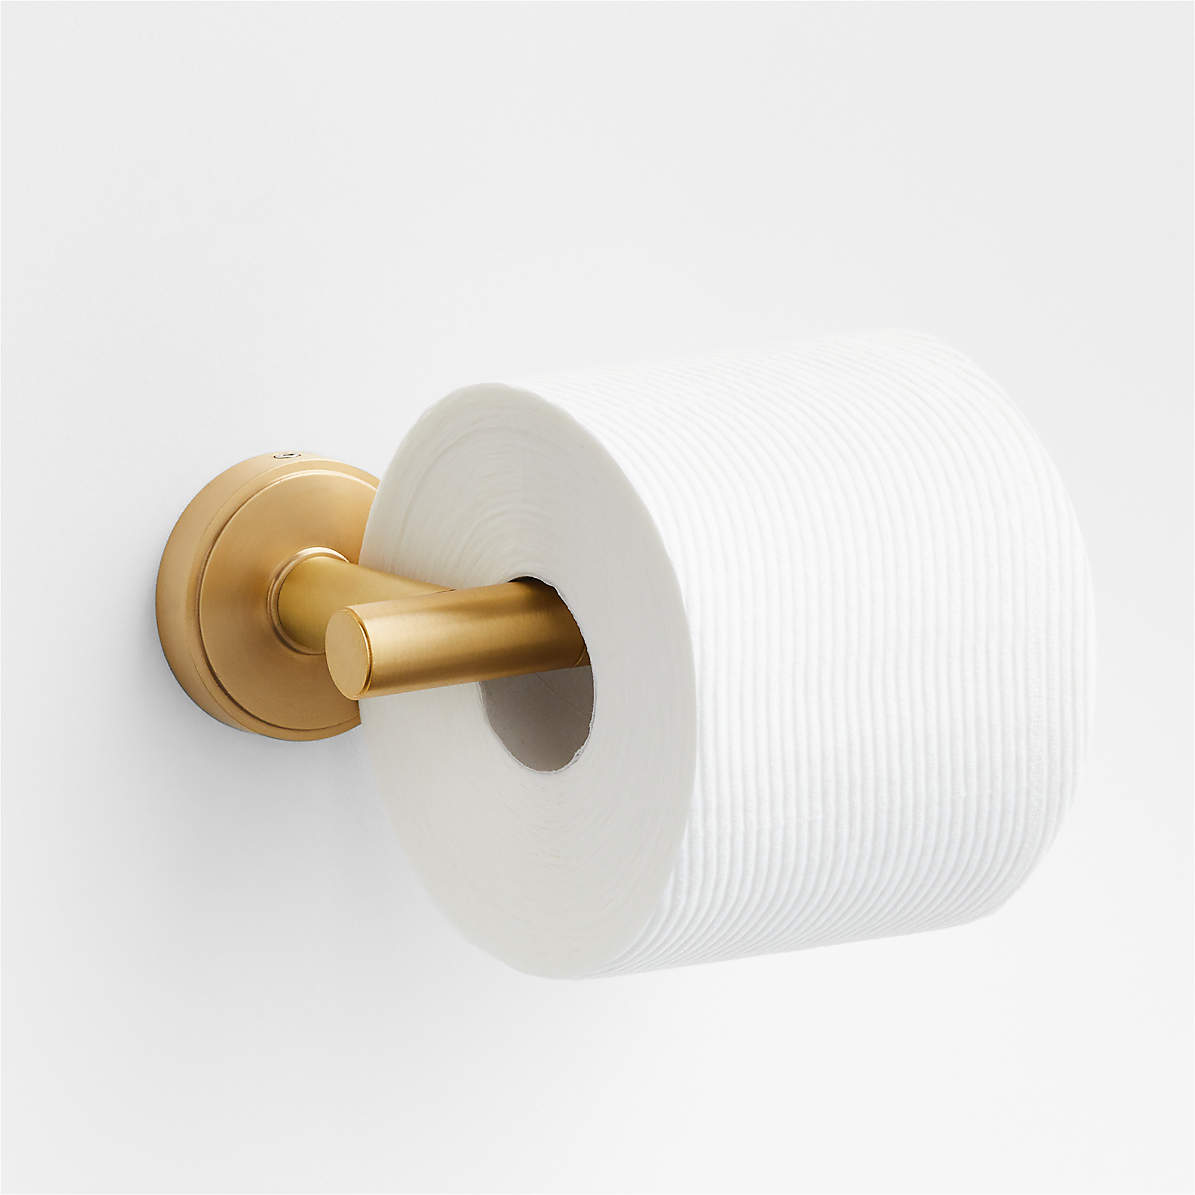 https://cb.scene7.com/is/image/Crate/ModFlatBrassToiletPprHldAVSSS23/$web_pdp_main_carousel_zoom_med$/230220165012/modern-flat-brass-wall-mounted-toilet-paper-holder.jpg